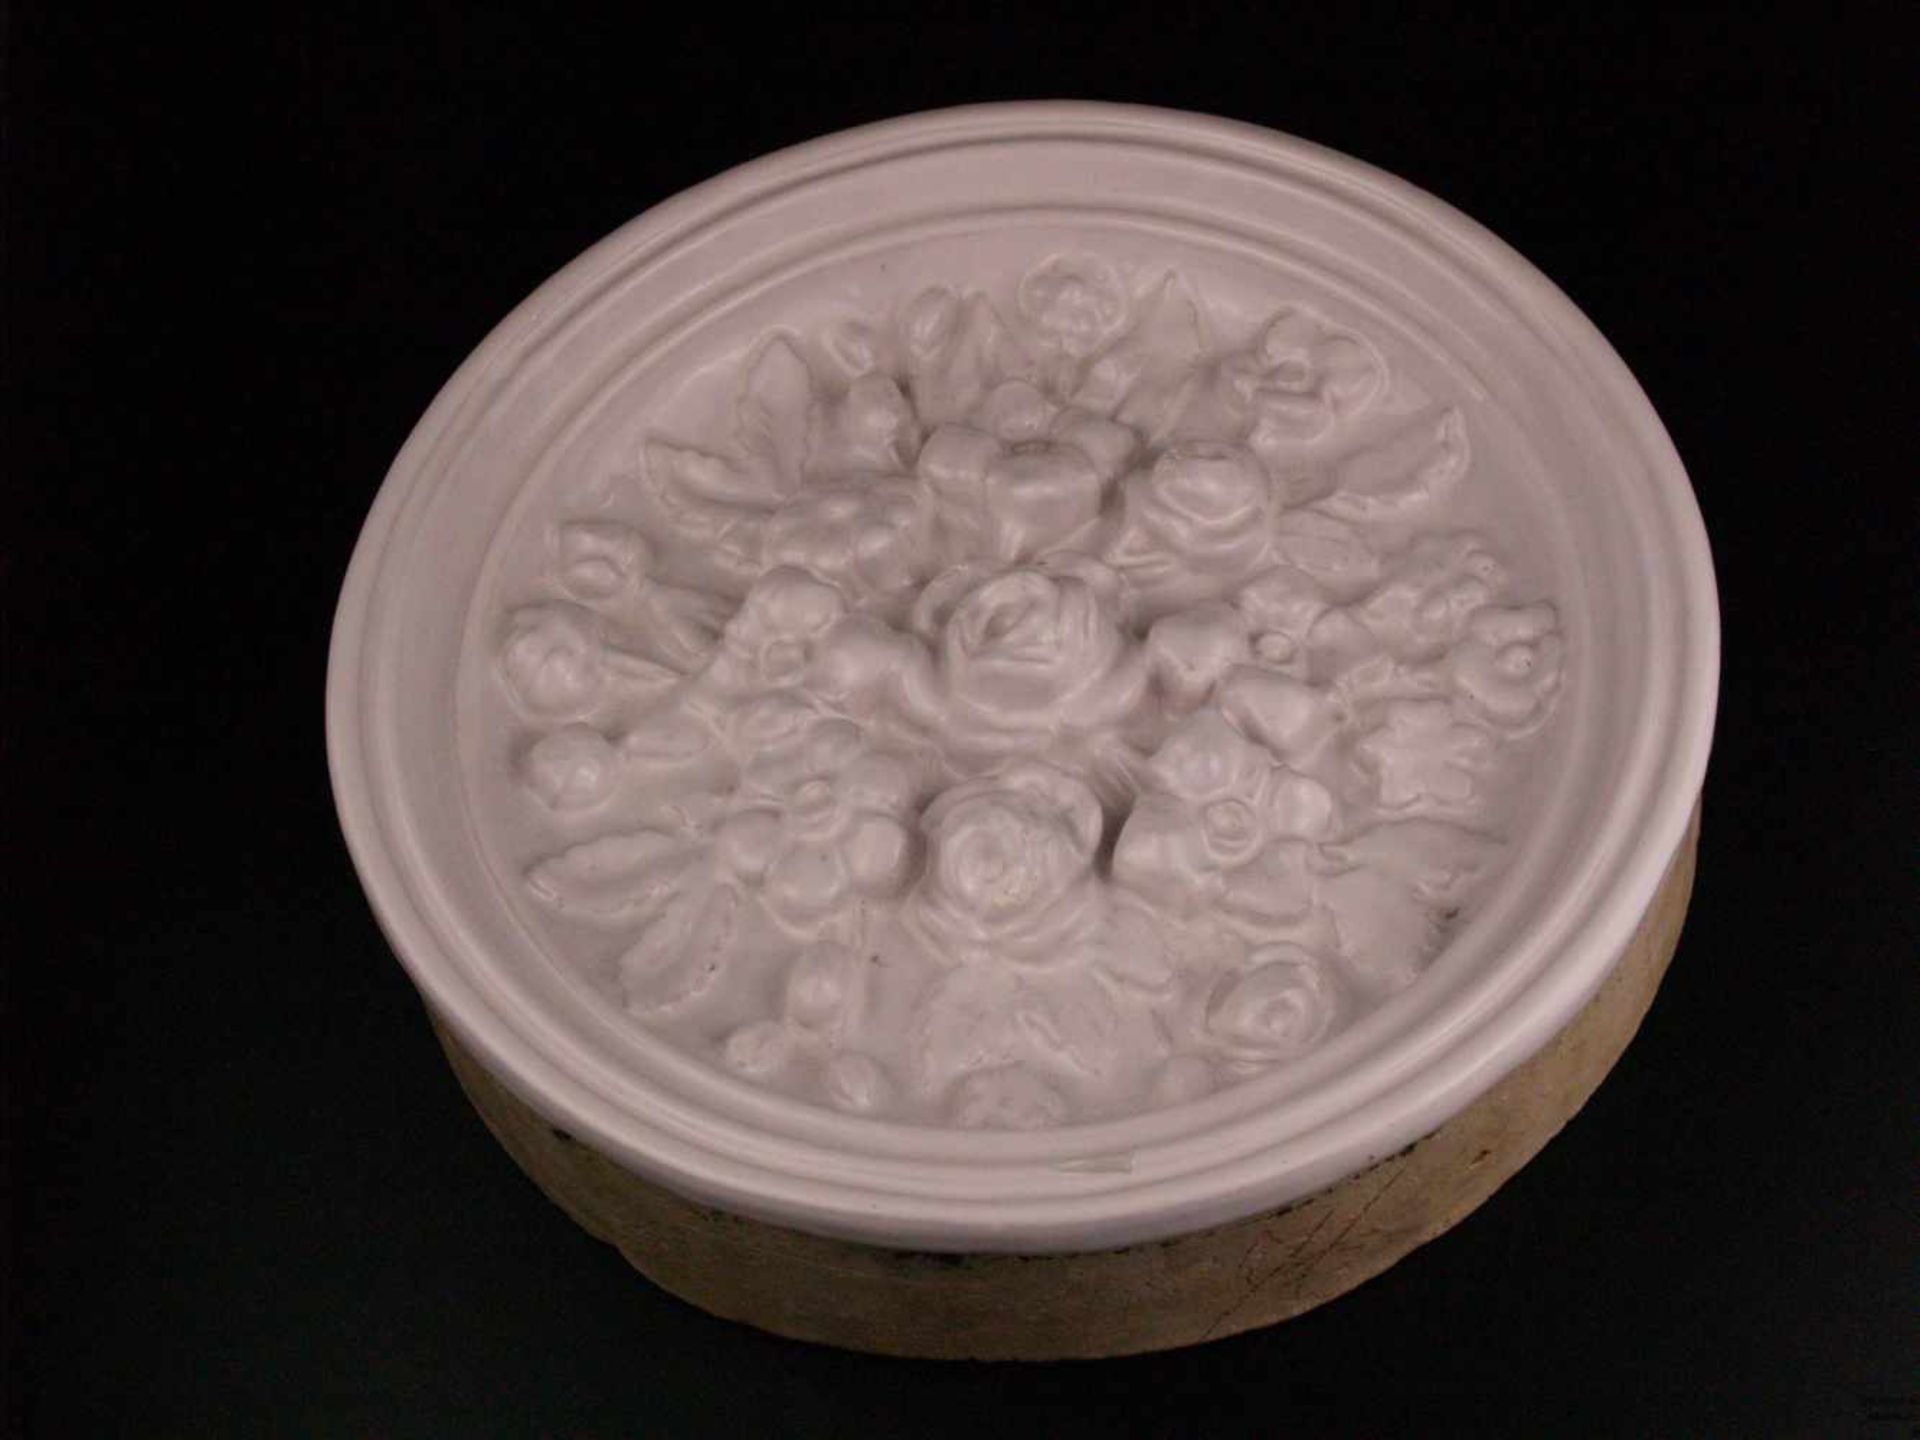 Jugendstil-Ofenkachel - Keramik, Tondo, reliefierter Rosendekor, weiß glasiert, stellenweise